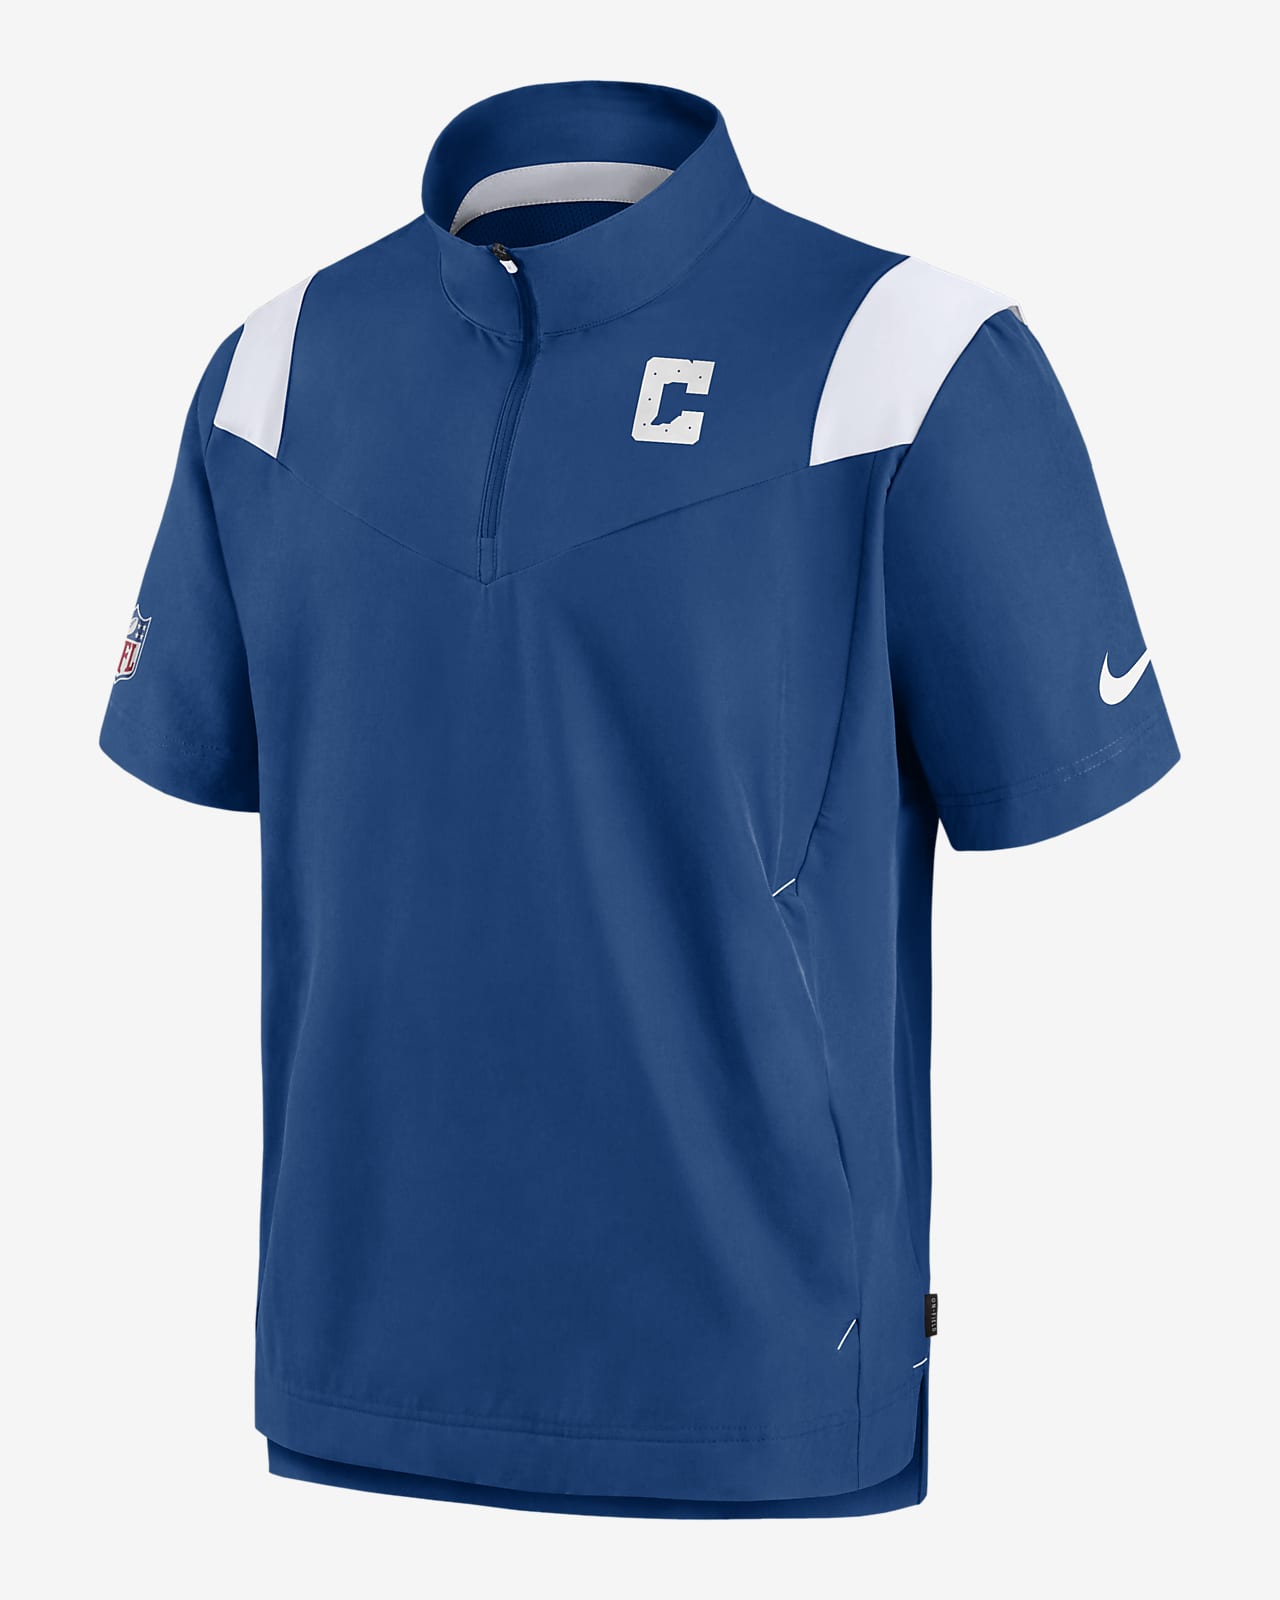 Nike Sideline Coach Lockup (NFL Indianapolis Colts) Men's Short-Sleeve Jacket